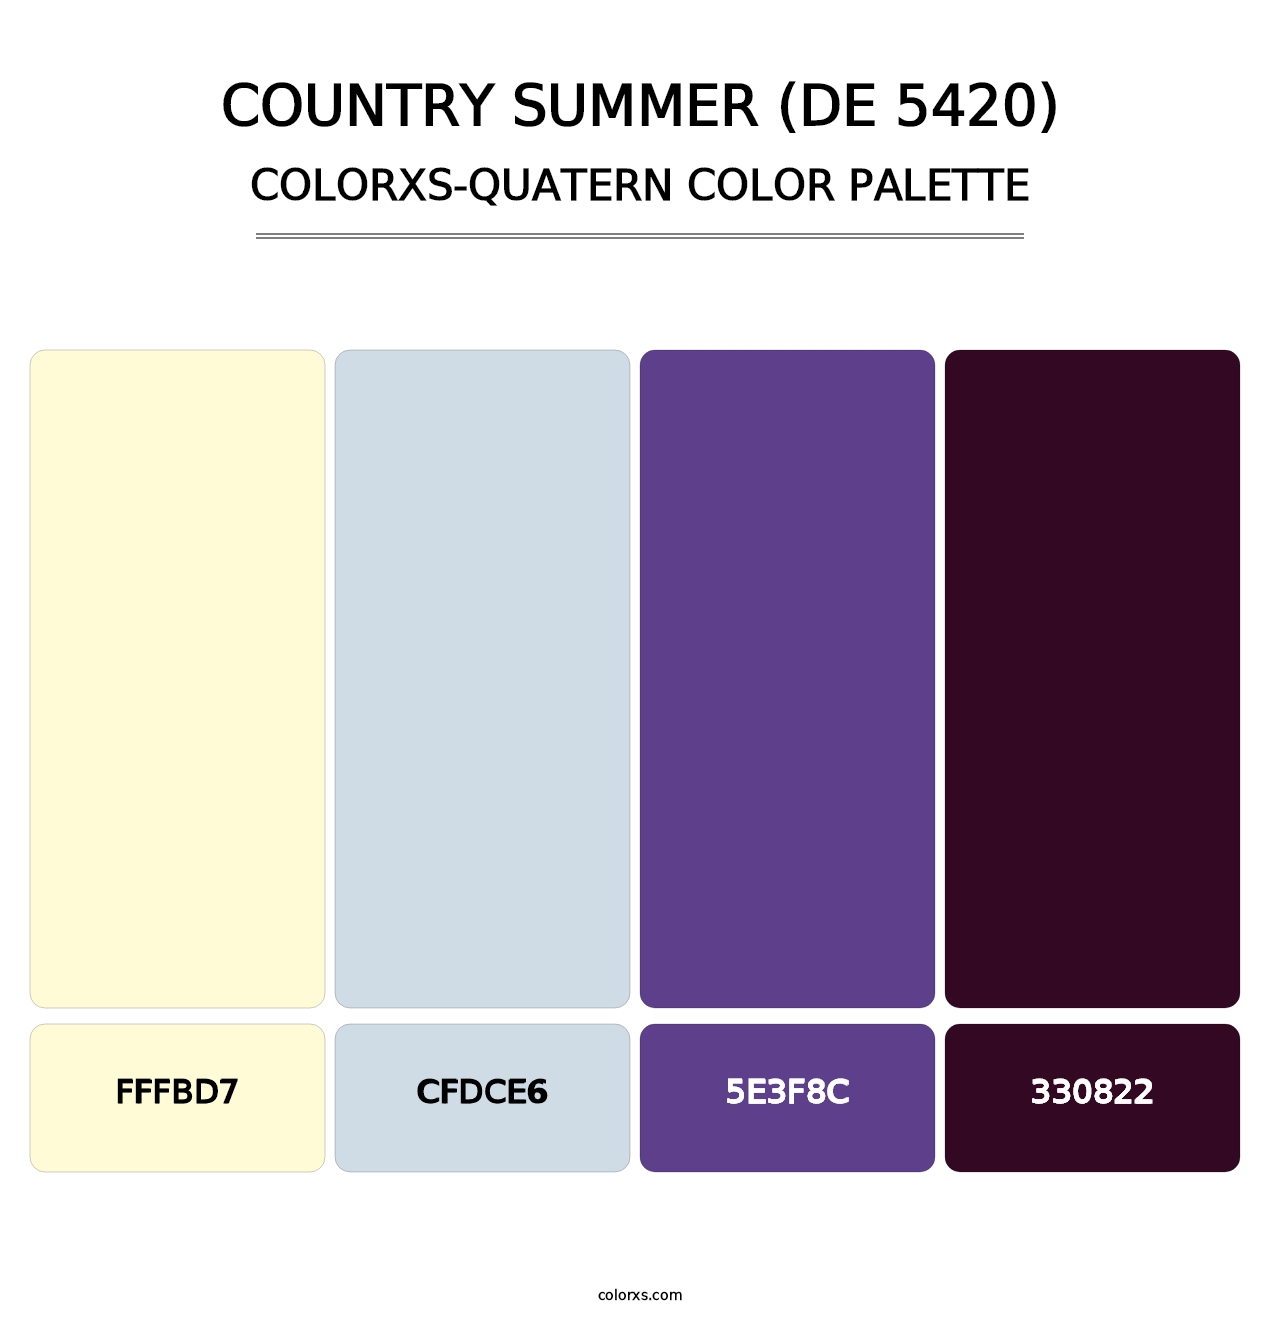 Country Summer (DE 5420) - Colorxs Quatern Palette